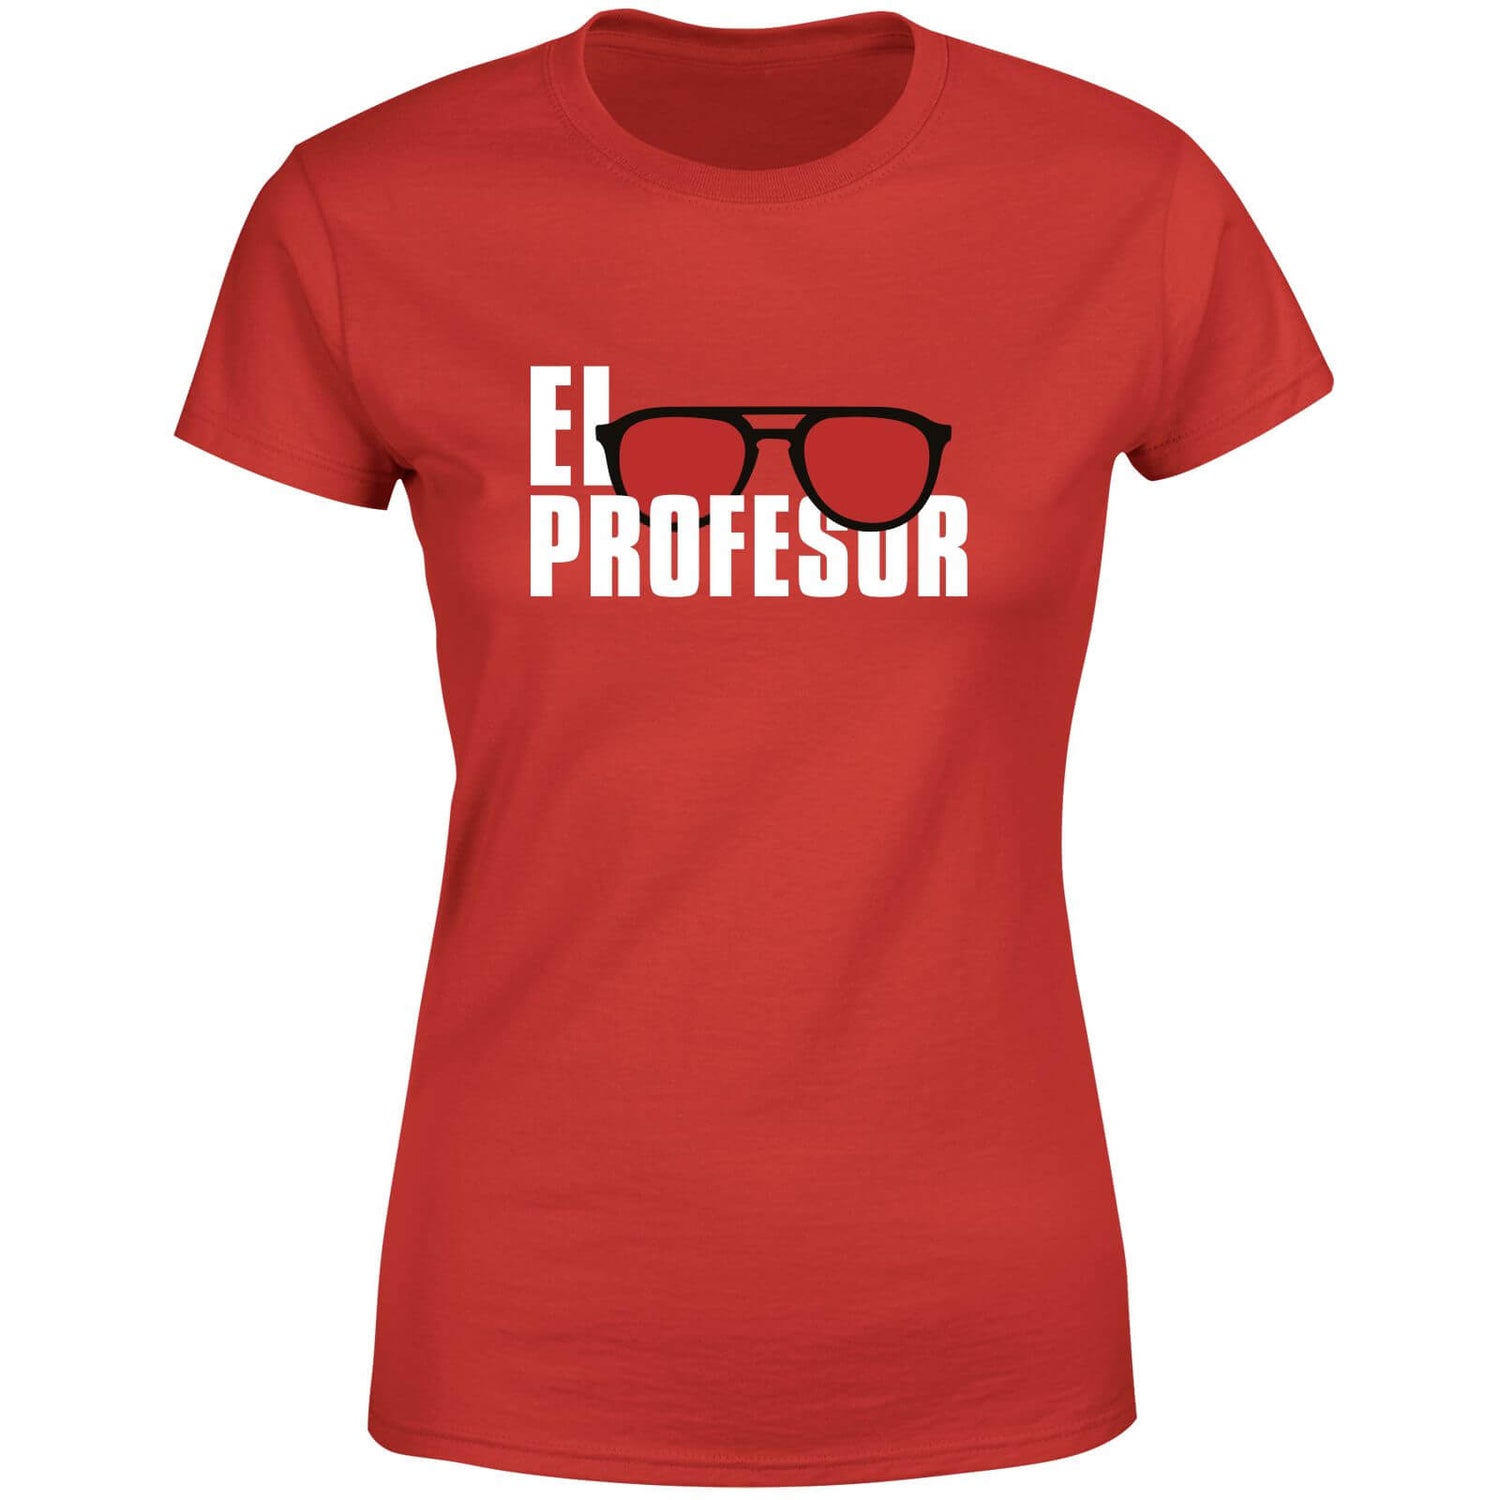 Money Heist El Profesor Women's T-Shirt - Red